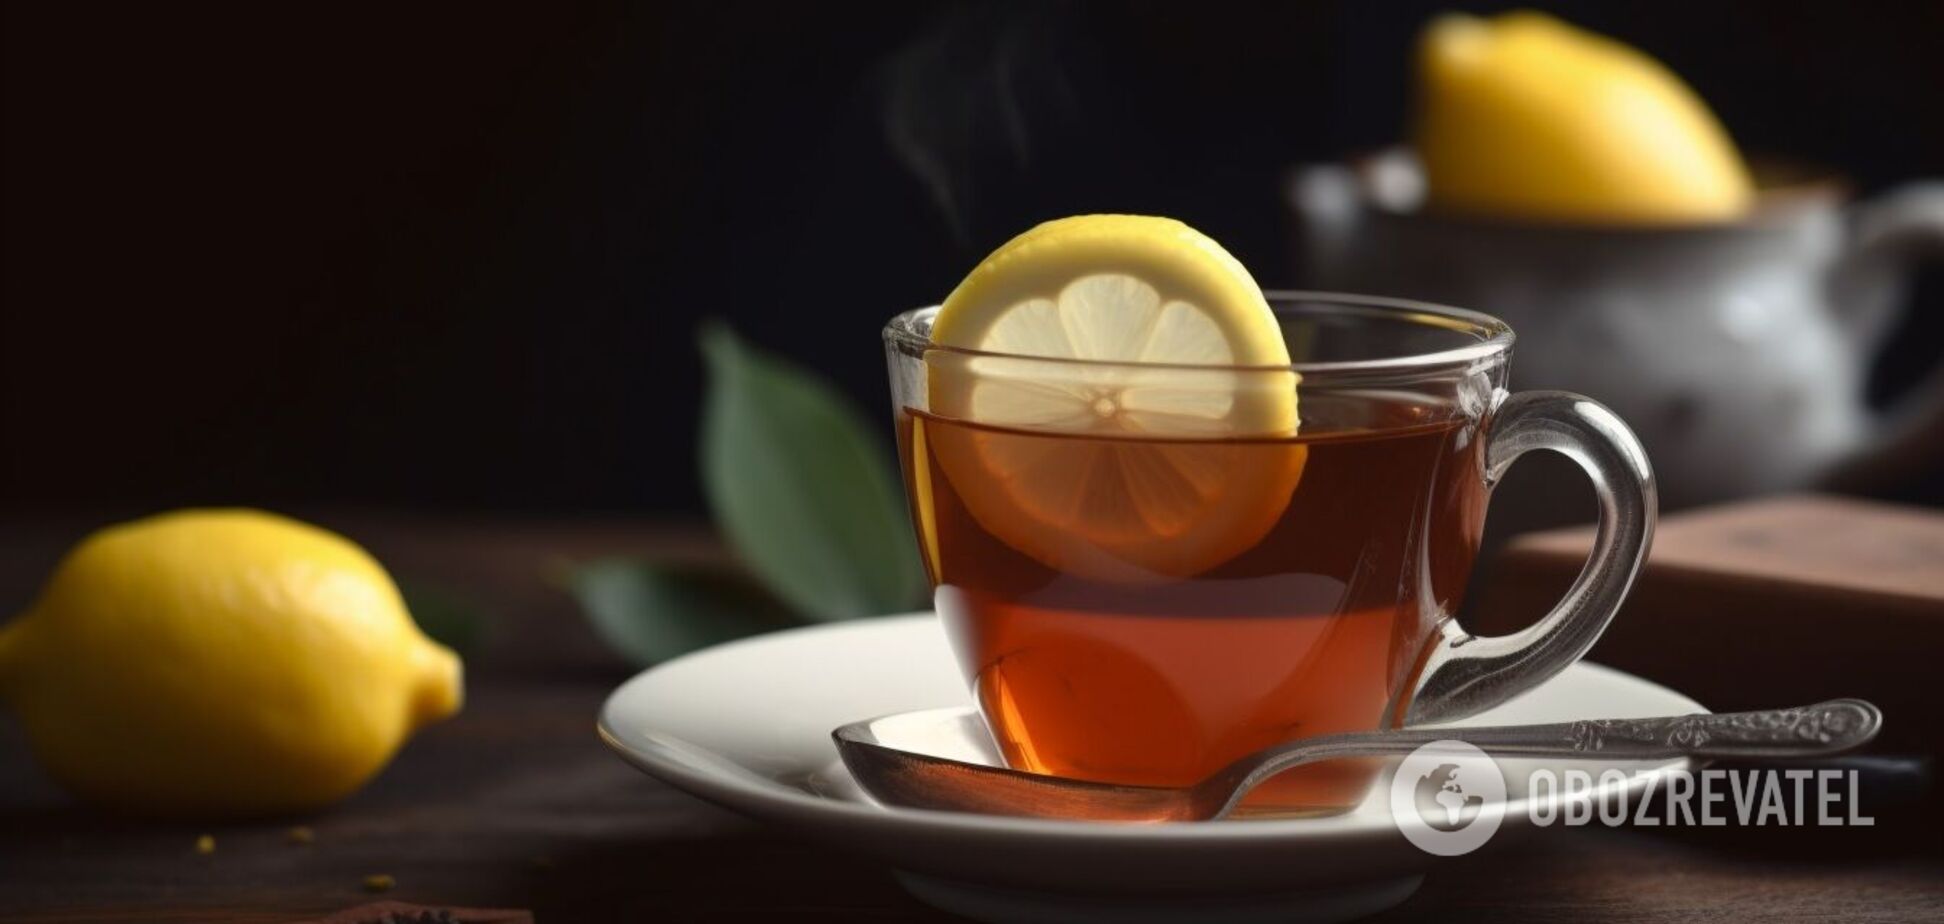 Правила чайного этикета: как правильно пить и можно ли есть лимон из чашки